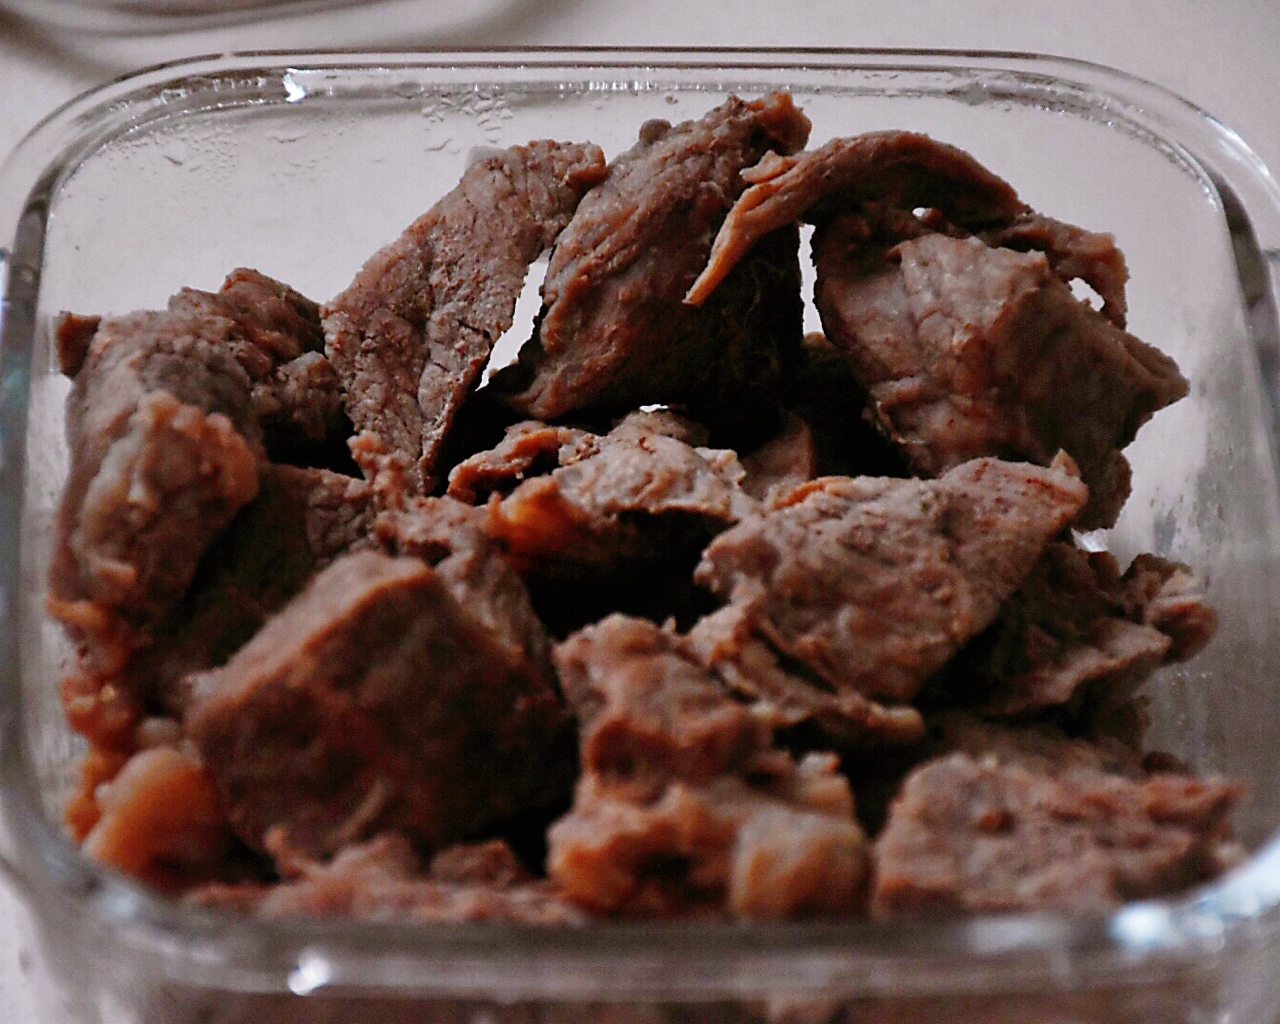 砂锅焖牛肉的做法